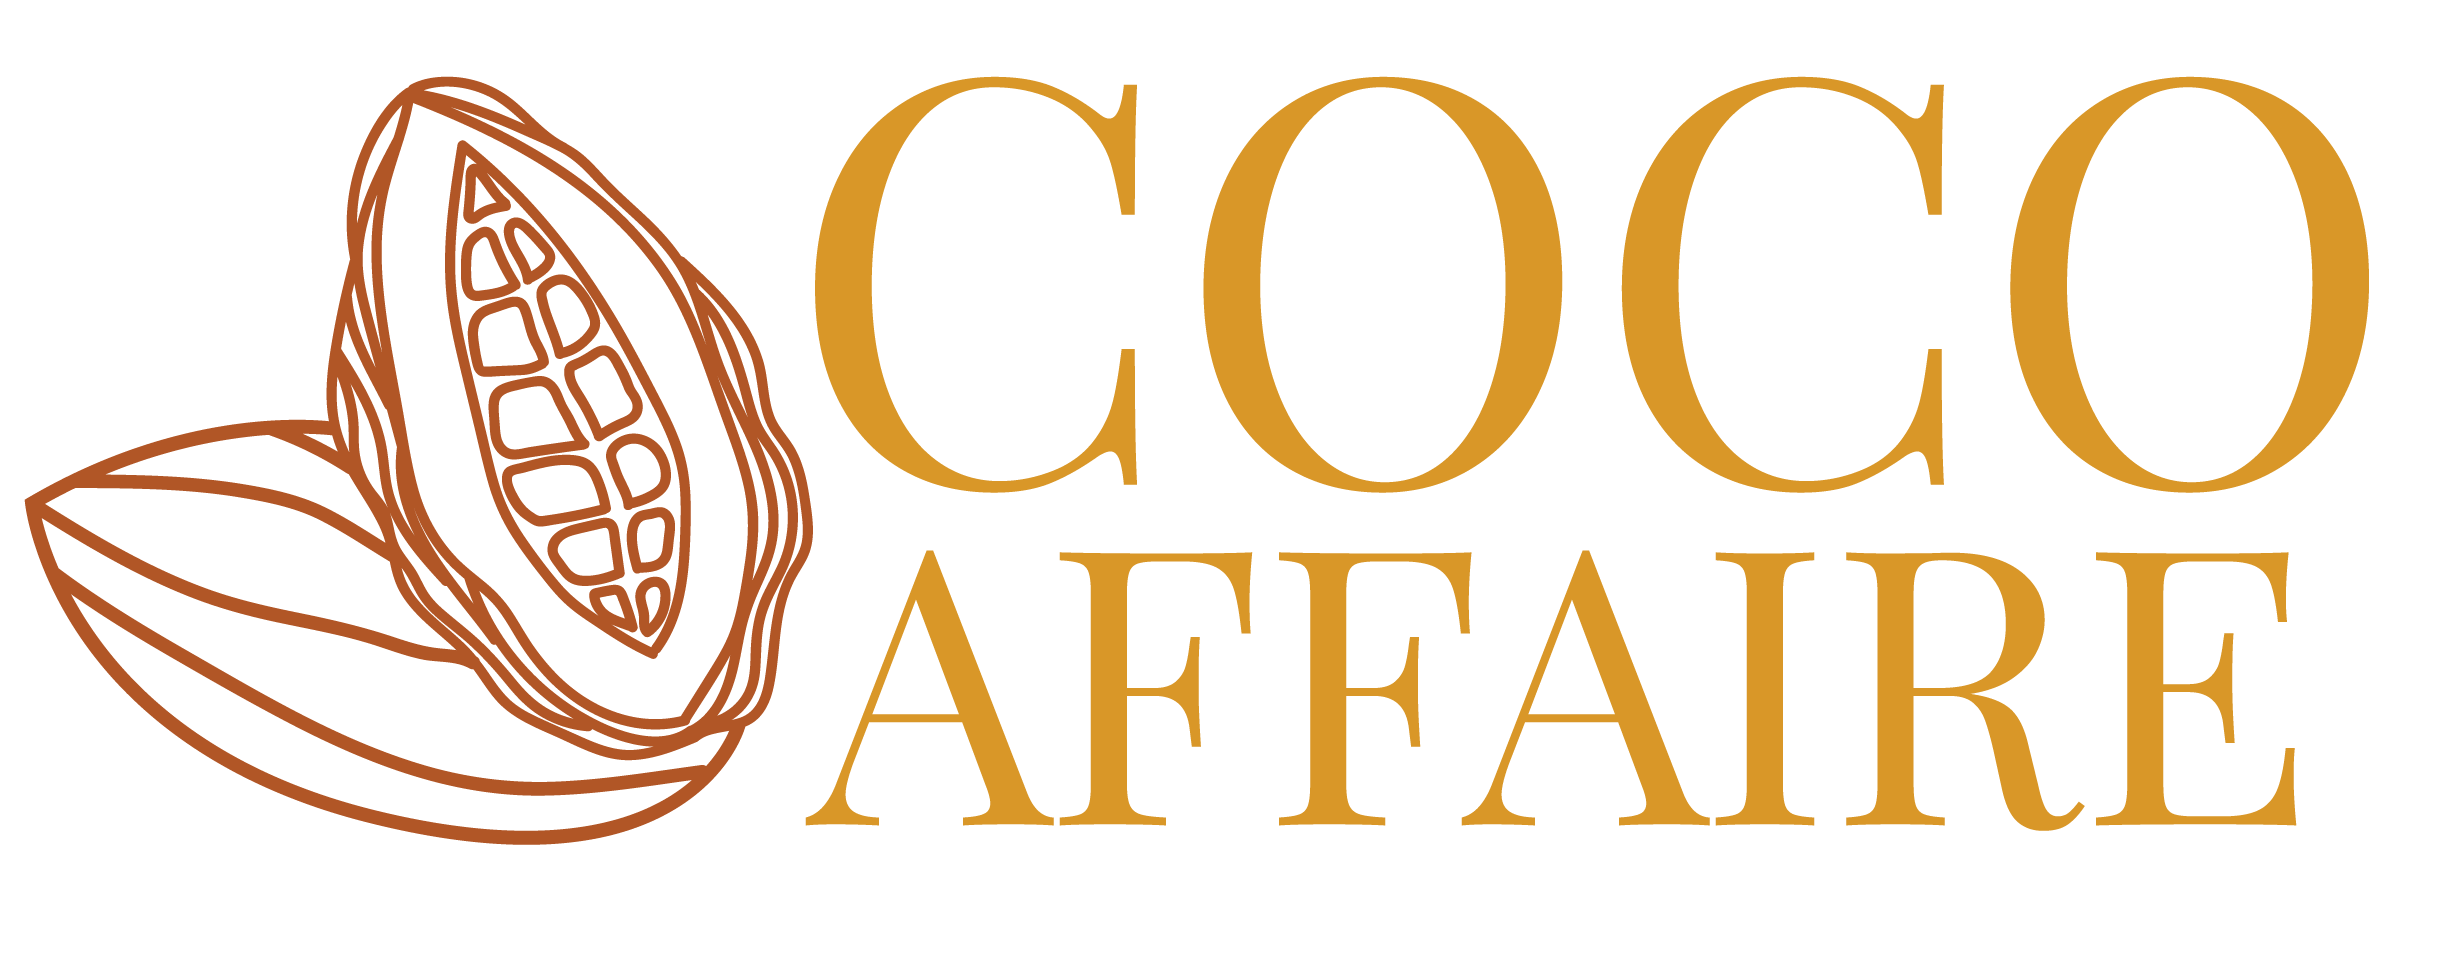 Cocoaffaire.com